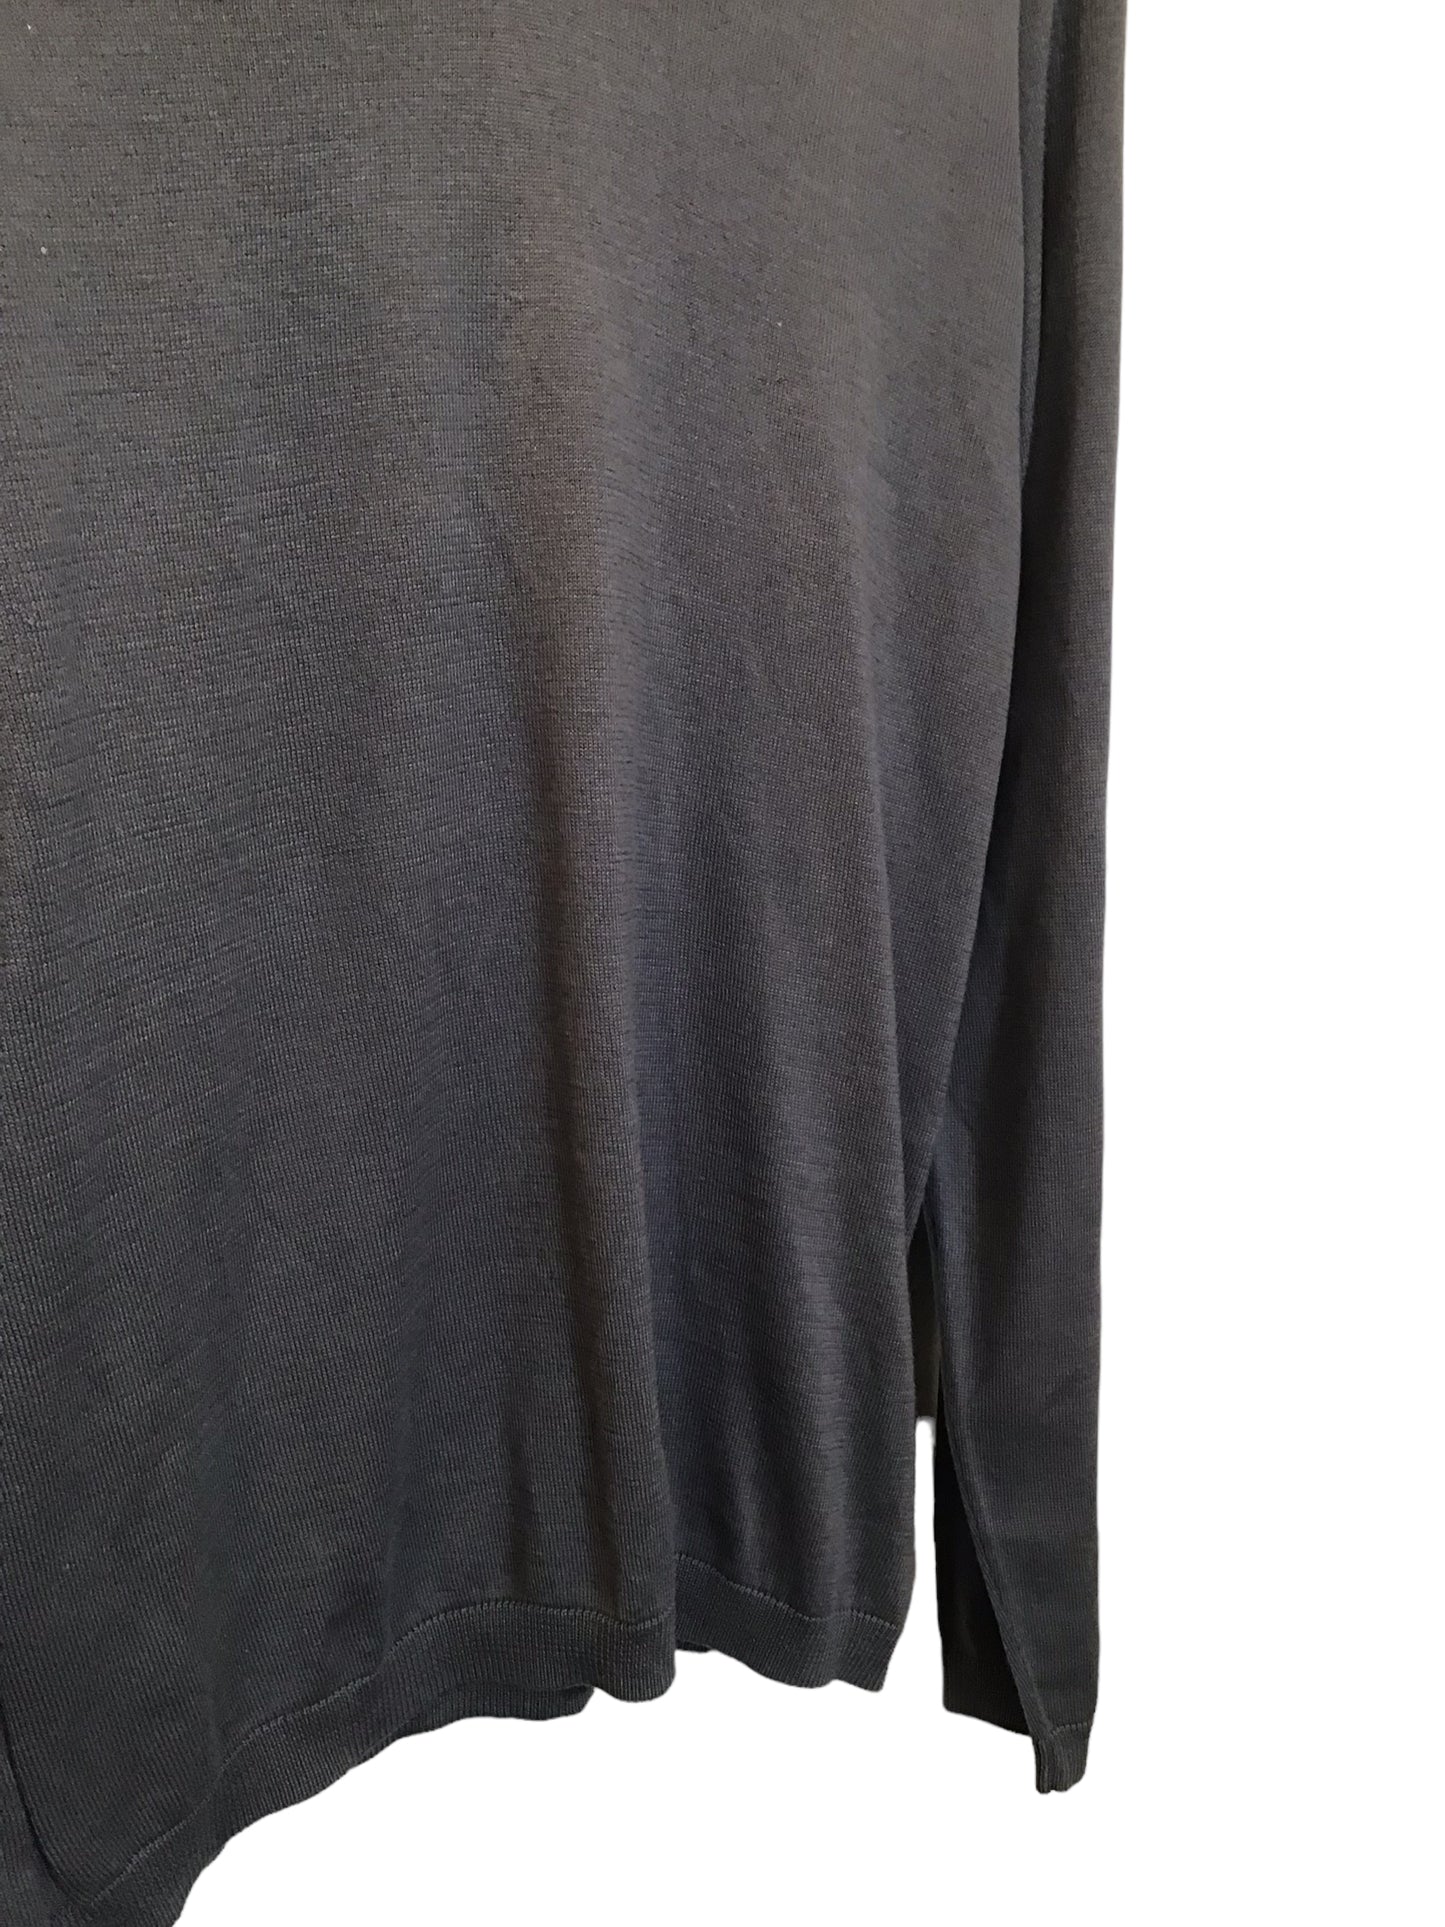 Gap V-Neck Sweater (Size M)